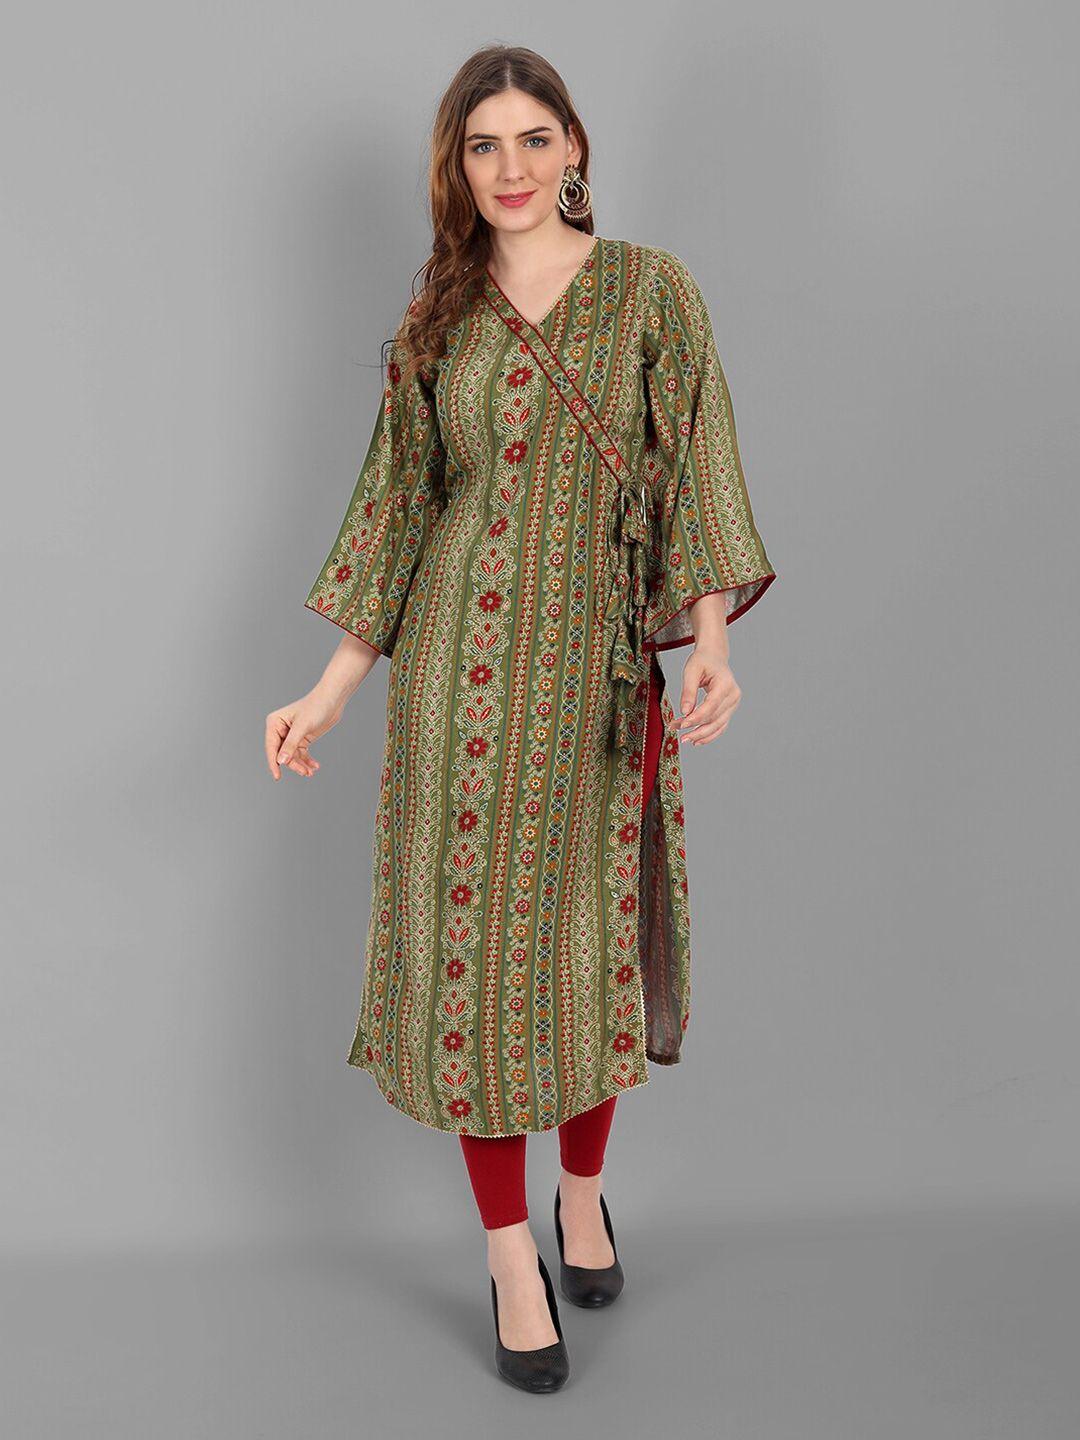 v tradition olive green & multicoloured floral printed v-neck kurti